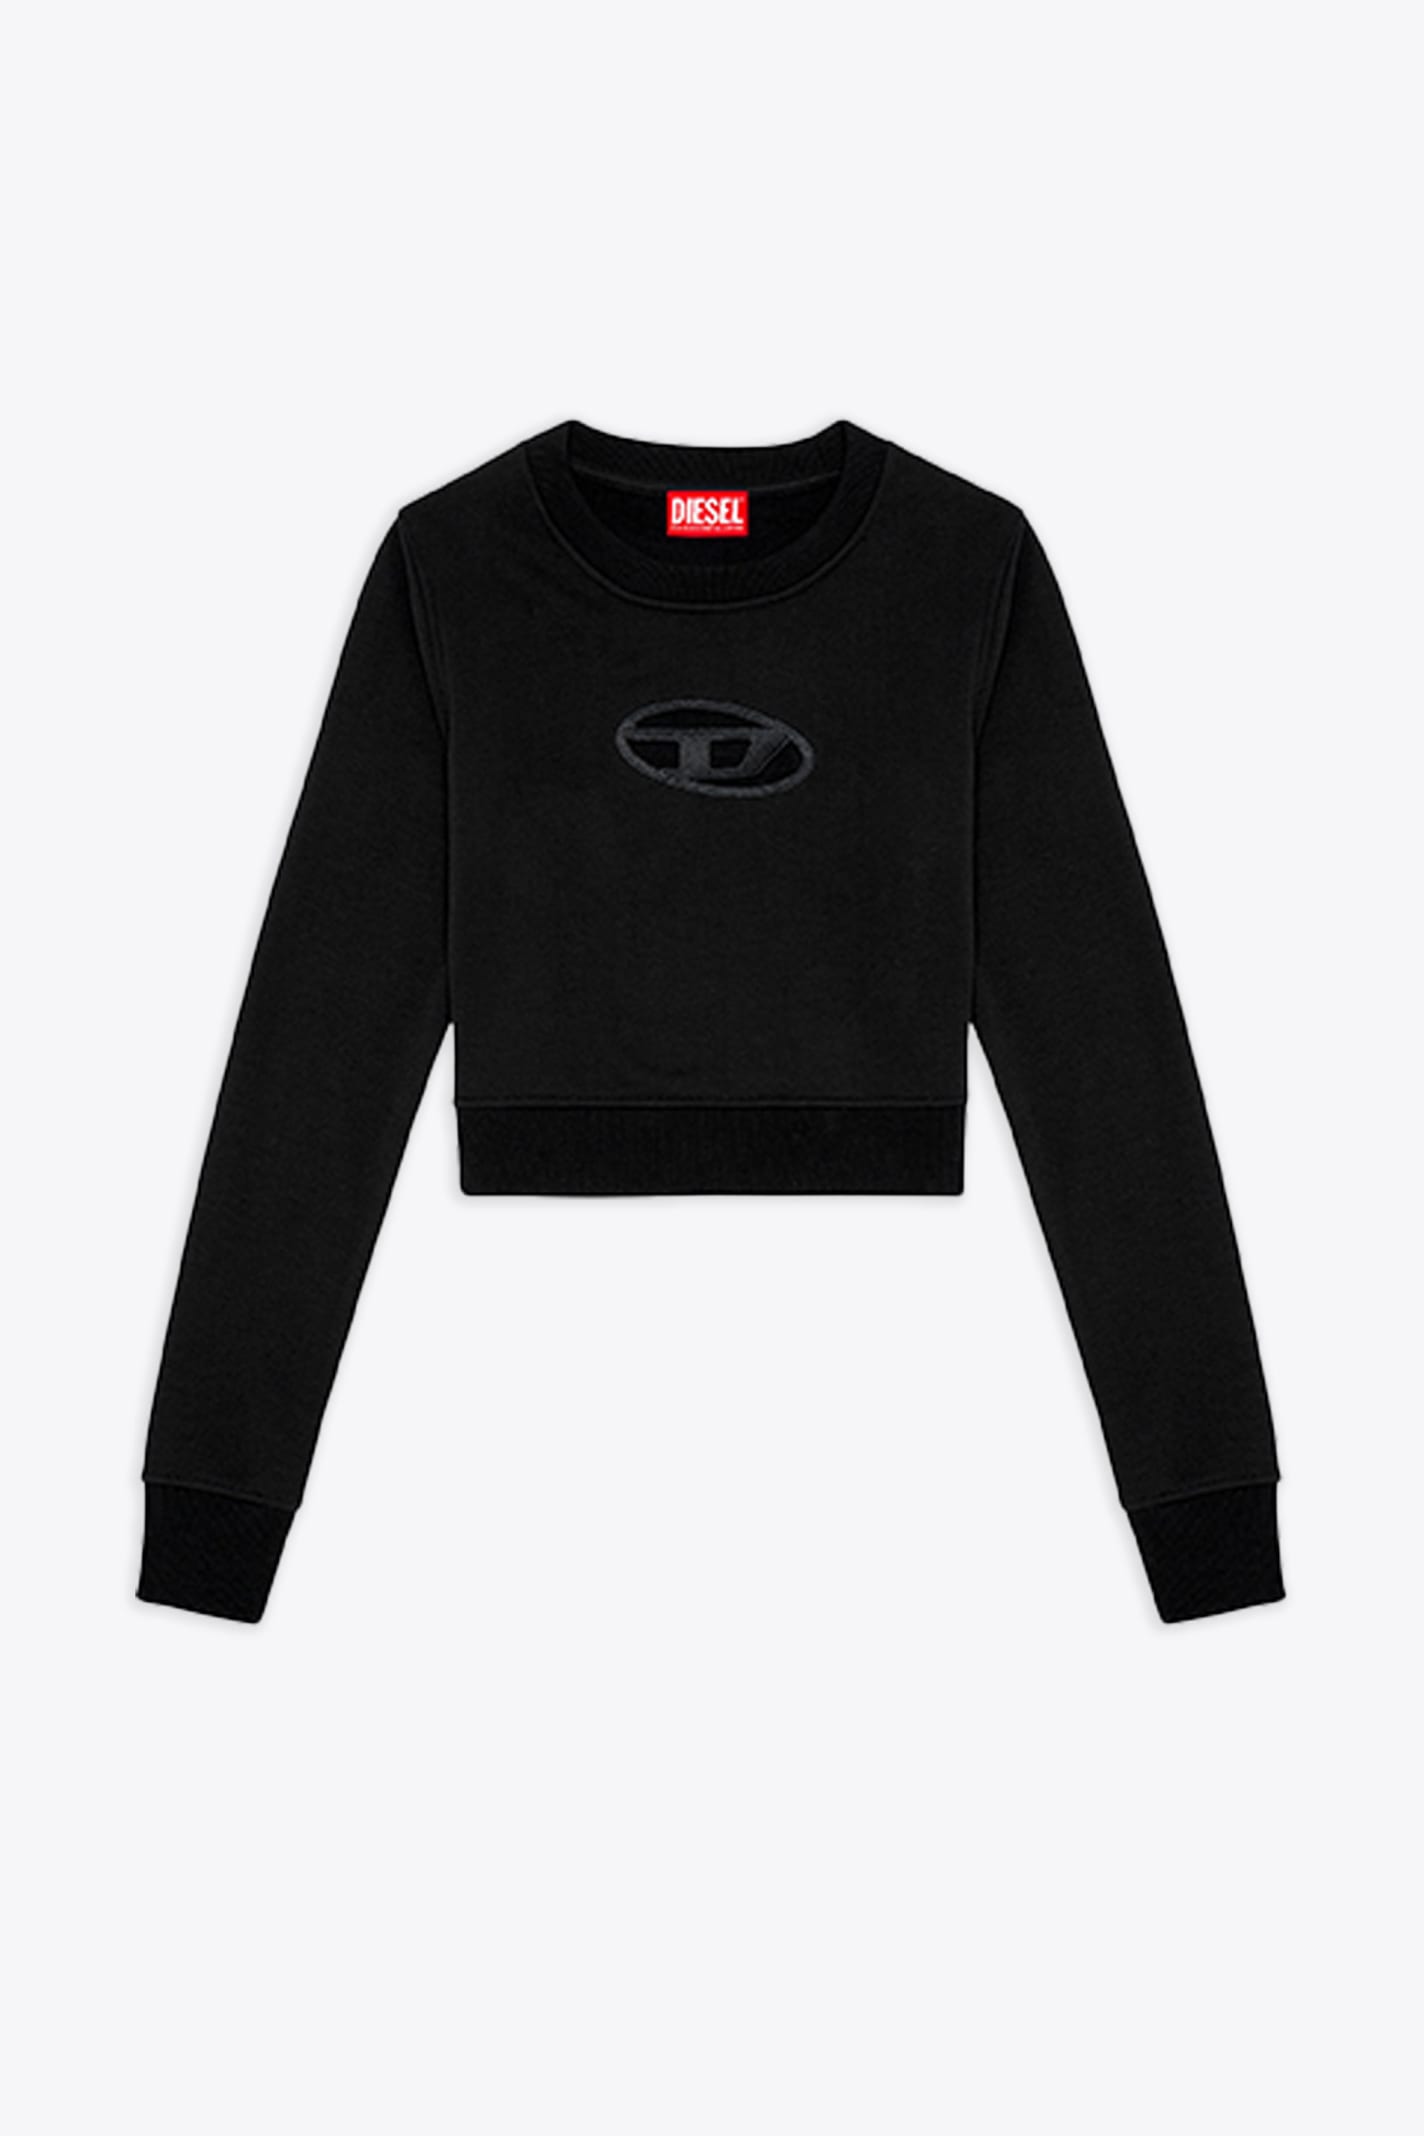 Diesel F-slimmy-od Black Cropped Sweatshirt With Cut-out Logo - F Slimmy Od In Nero